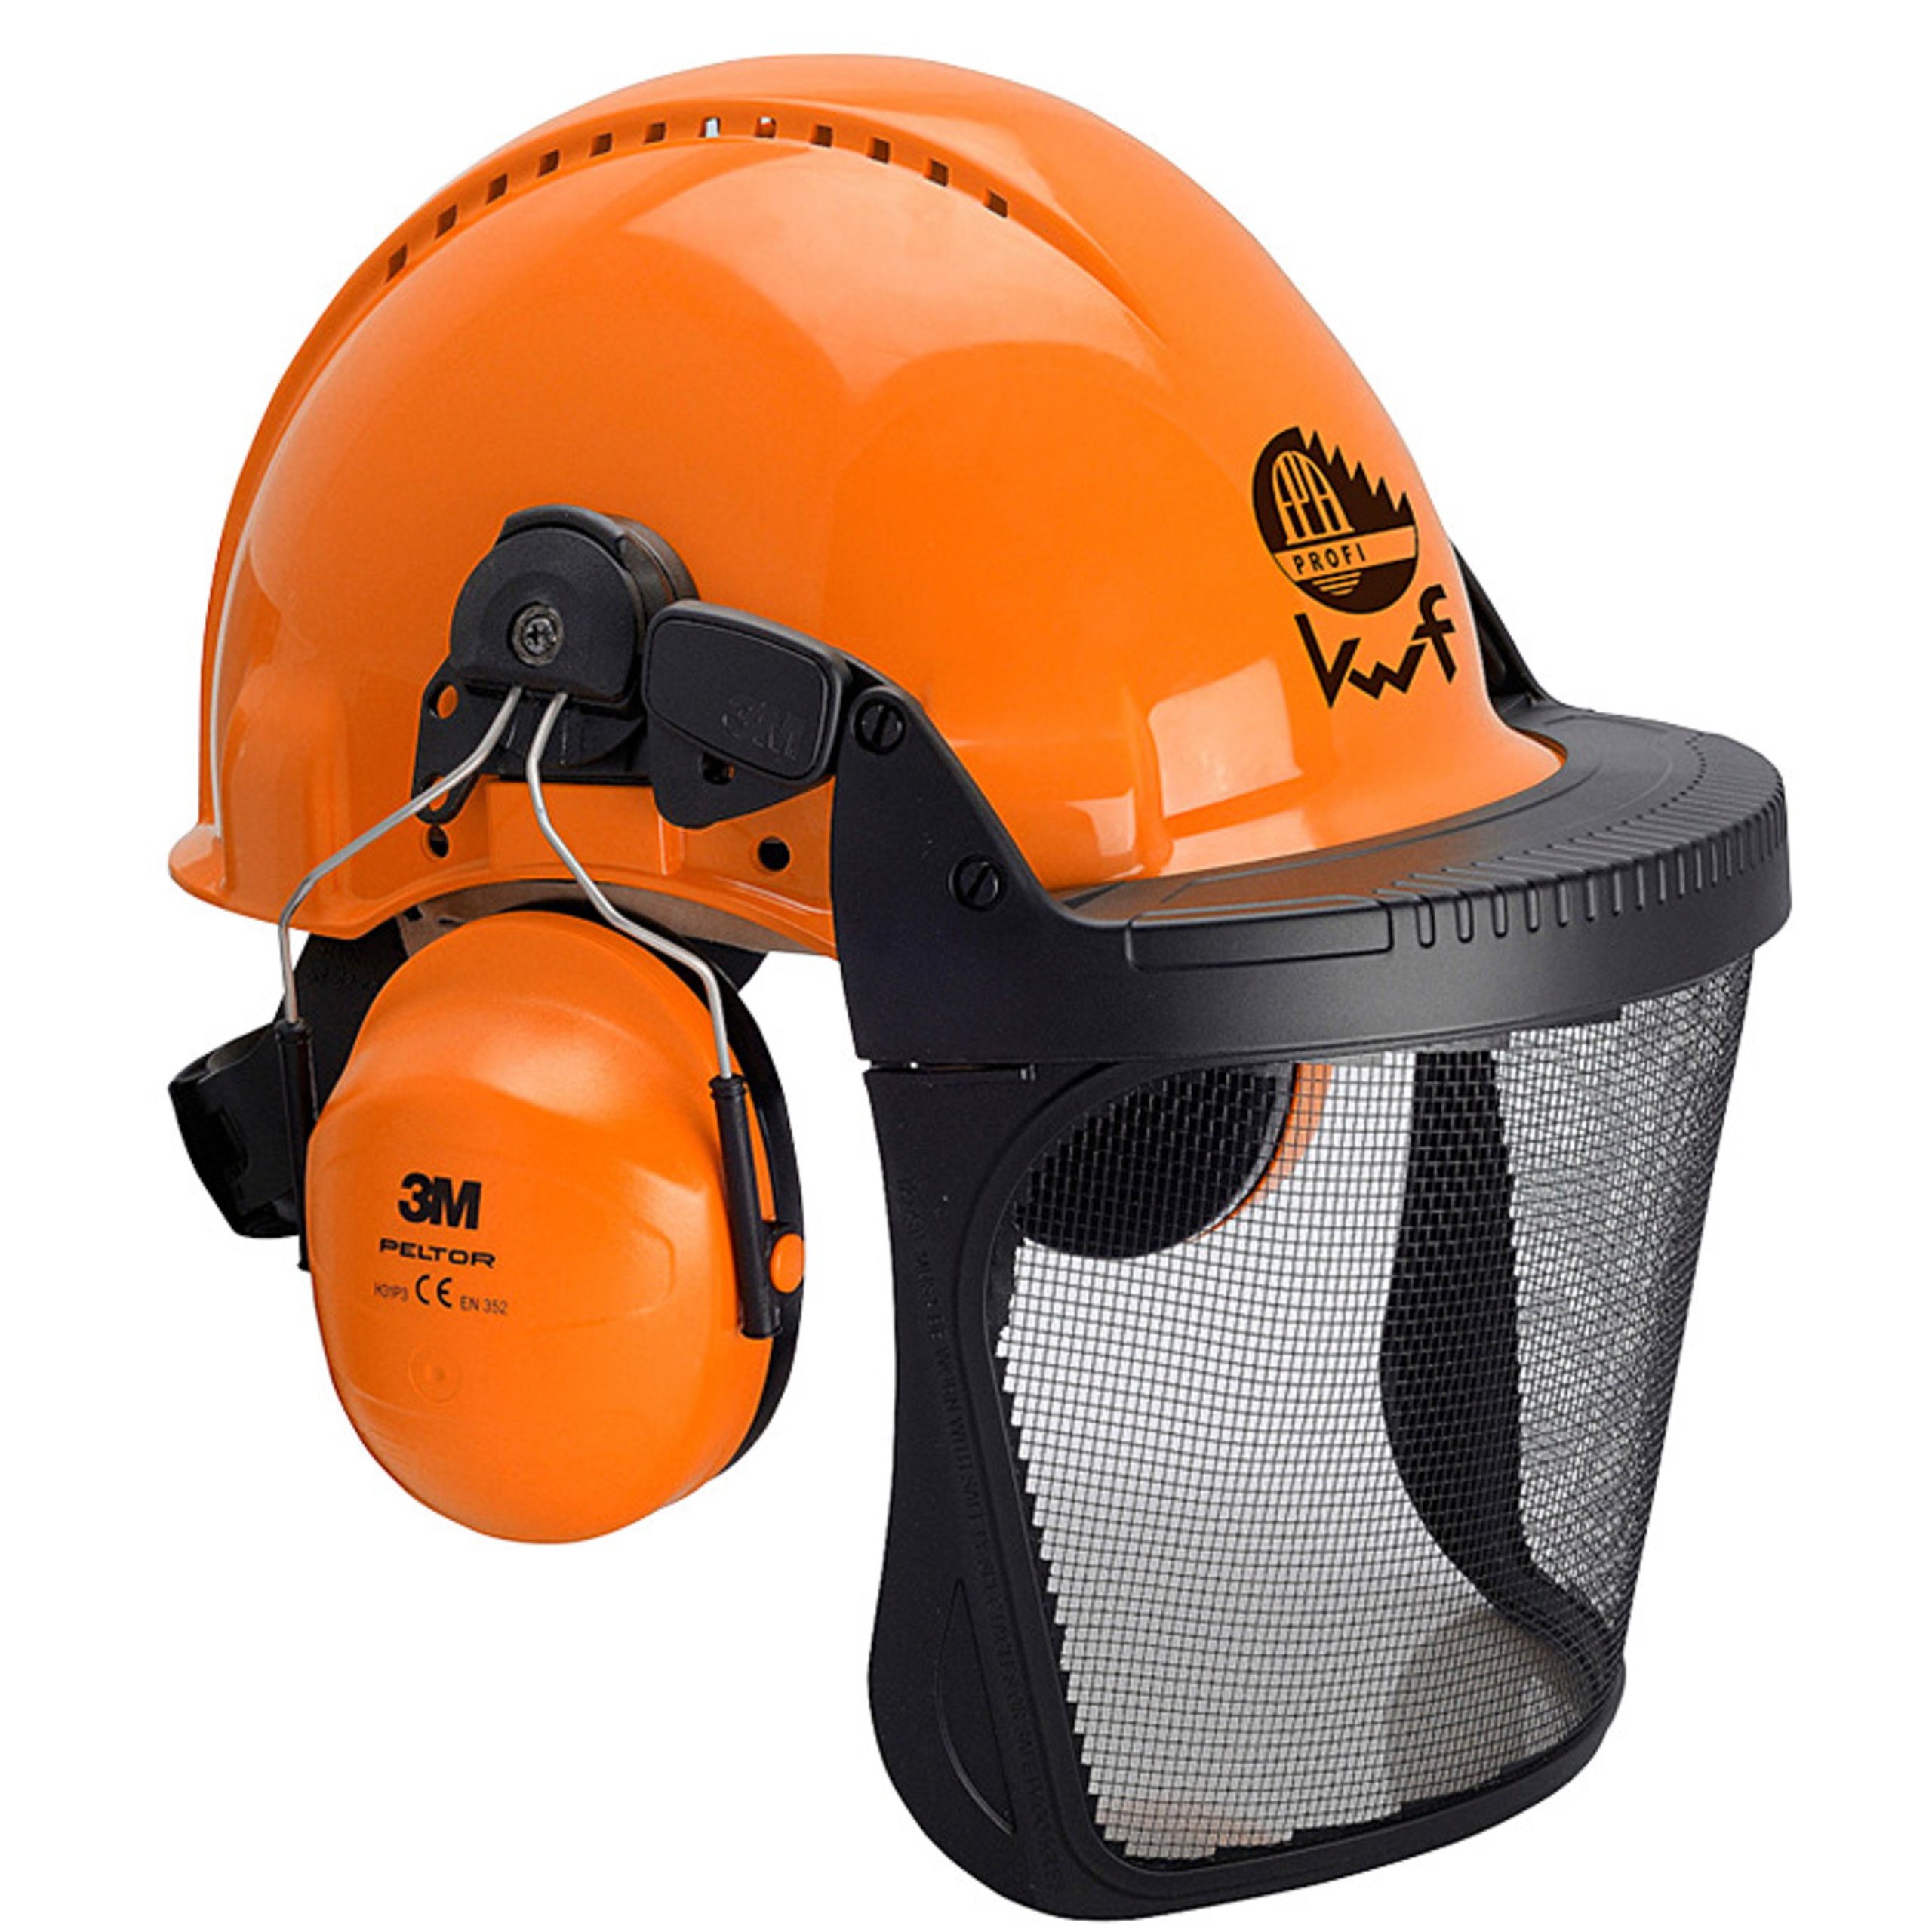 Peltor Kopfschutz-Kombination G3000M mit H31 Gehörschutz und V9 Schutzbrille